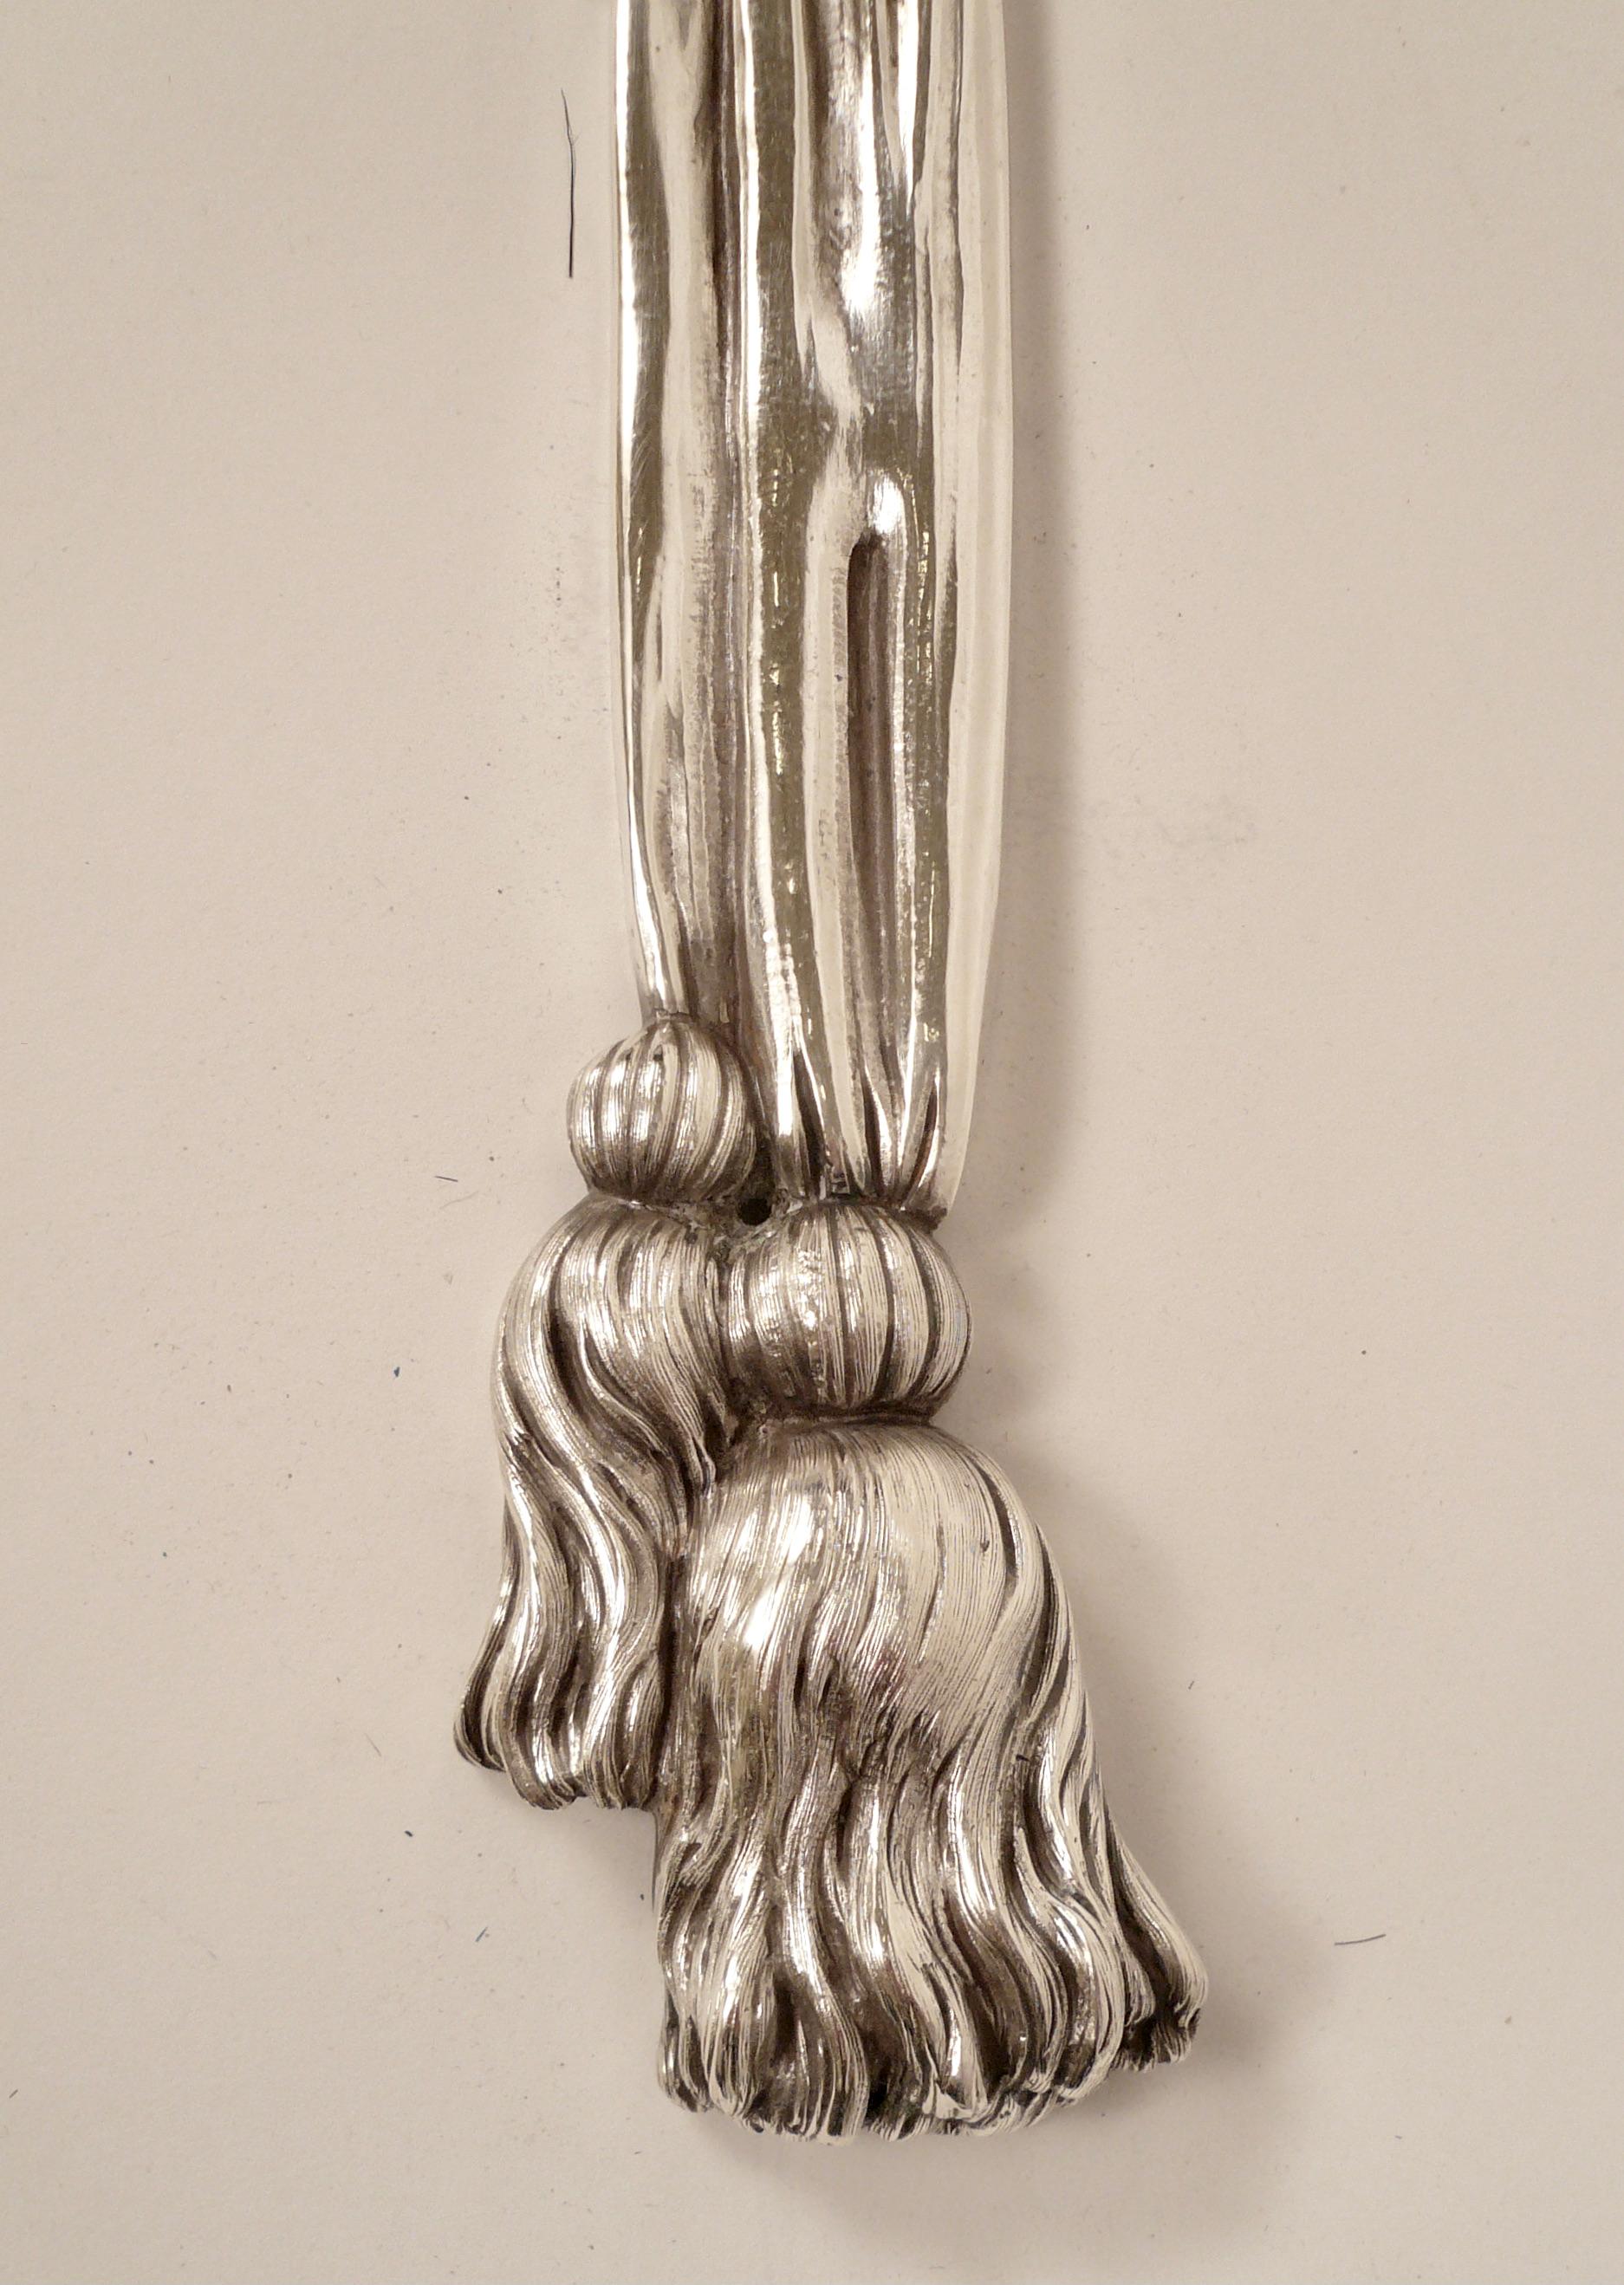 Cette impressionnante paire d'appliques Caldwell, qui rappelle la sculpture de Grinling Gibbons, présente des nœuds de nœud, des rubans et des glands. Les rubans sont parsemés de groupes de motifs de fruits assortis.
L'argenterie d'origine est en